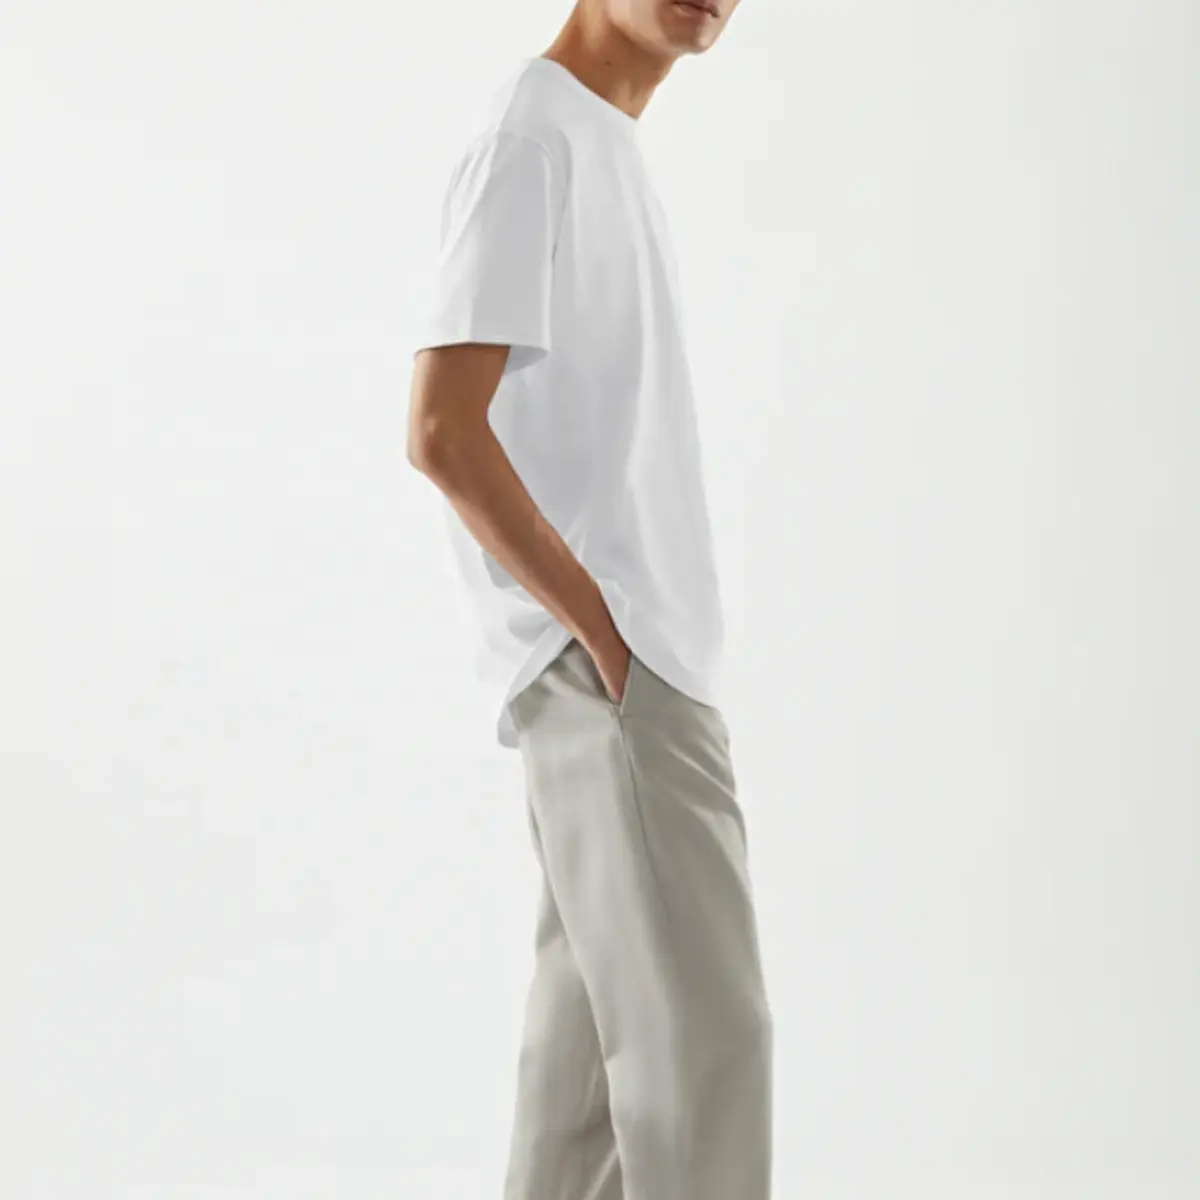 Camiseta de algodón con logo bordado para hombre, camiseta blanca de algodón con diseño impreso completo de CHINA